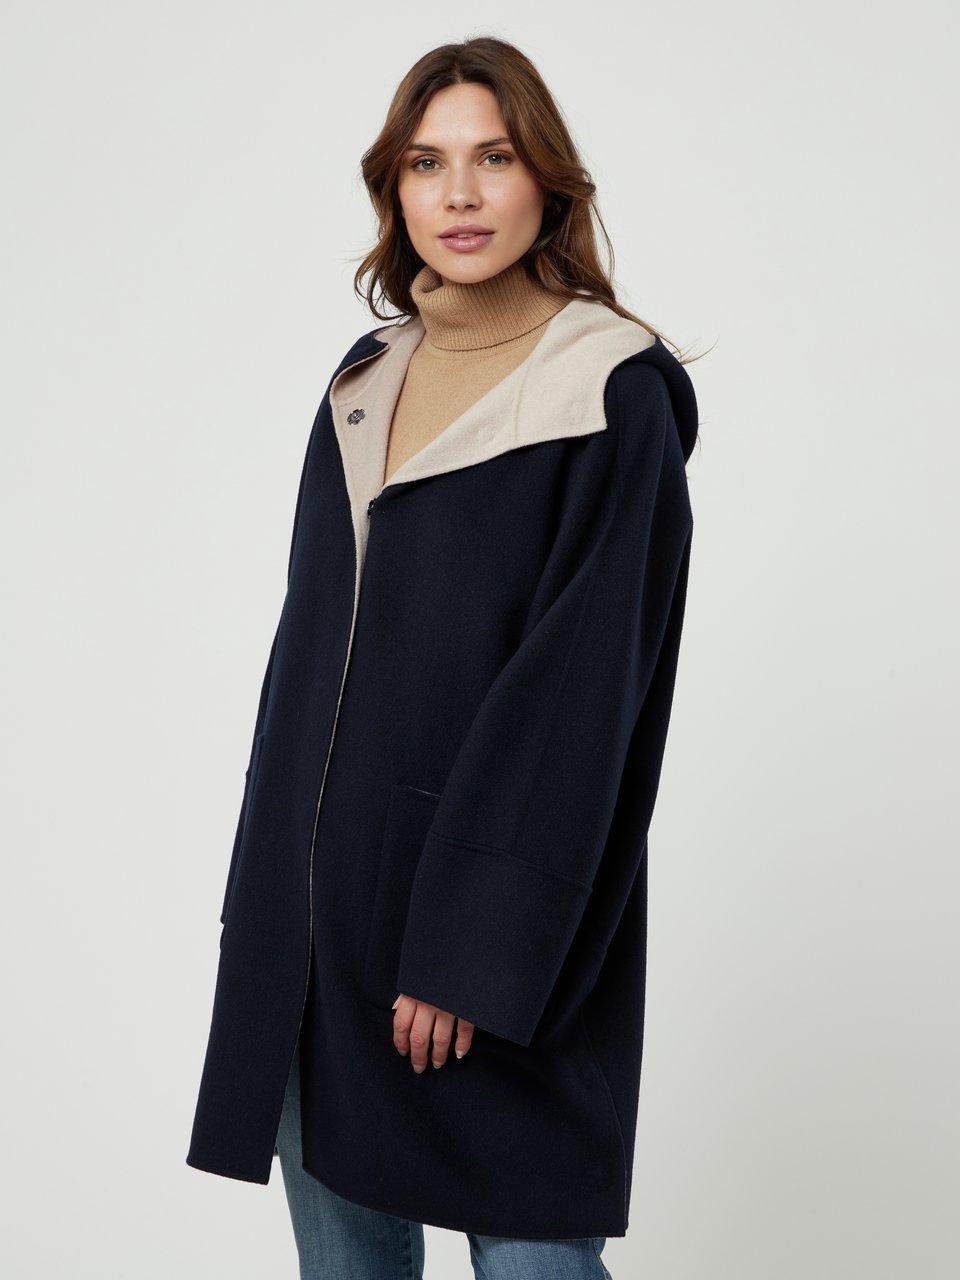 BASLER - La veste réversible 100% laine vierge